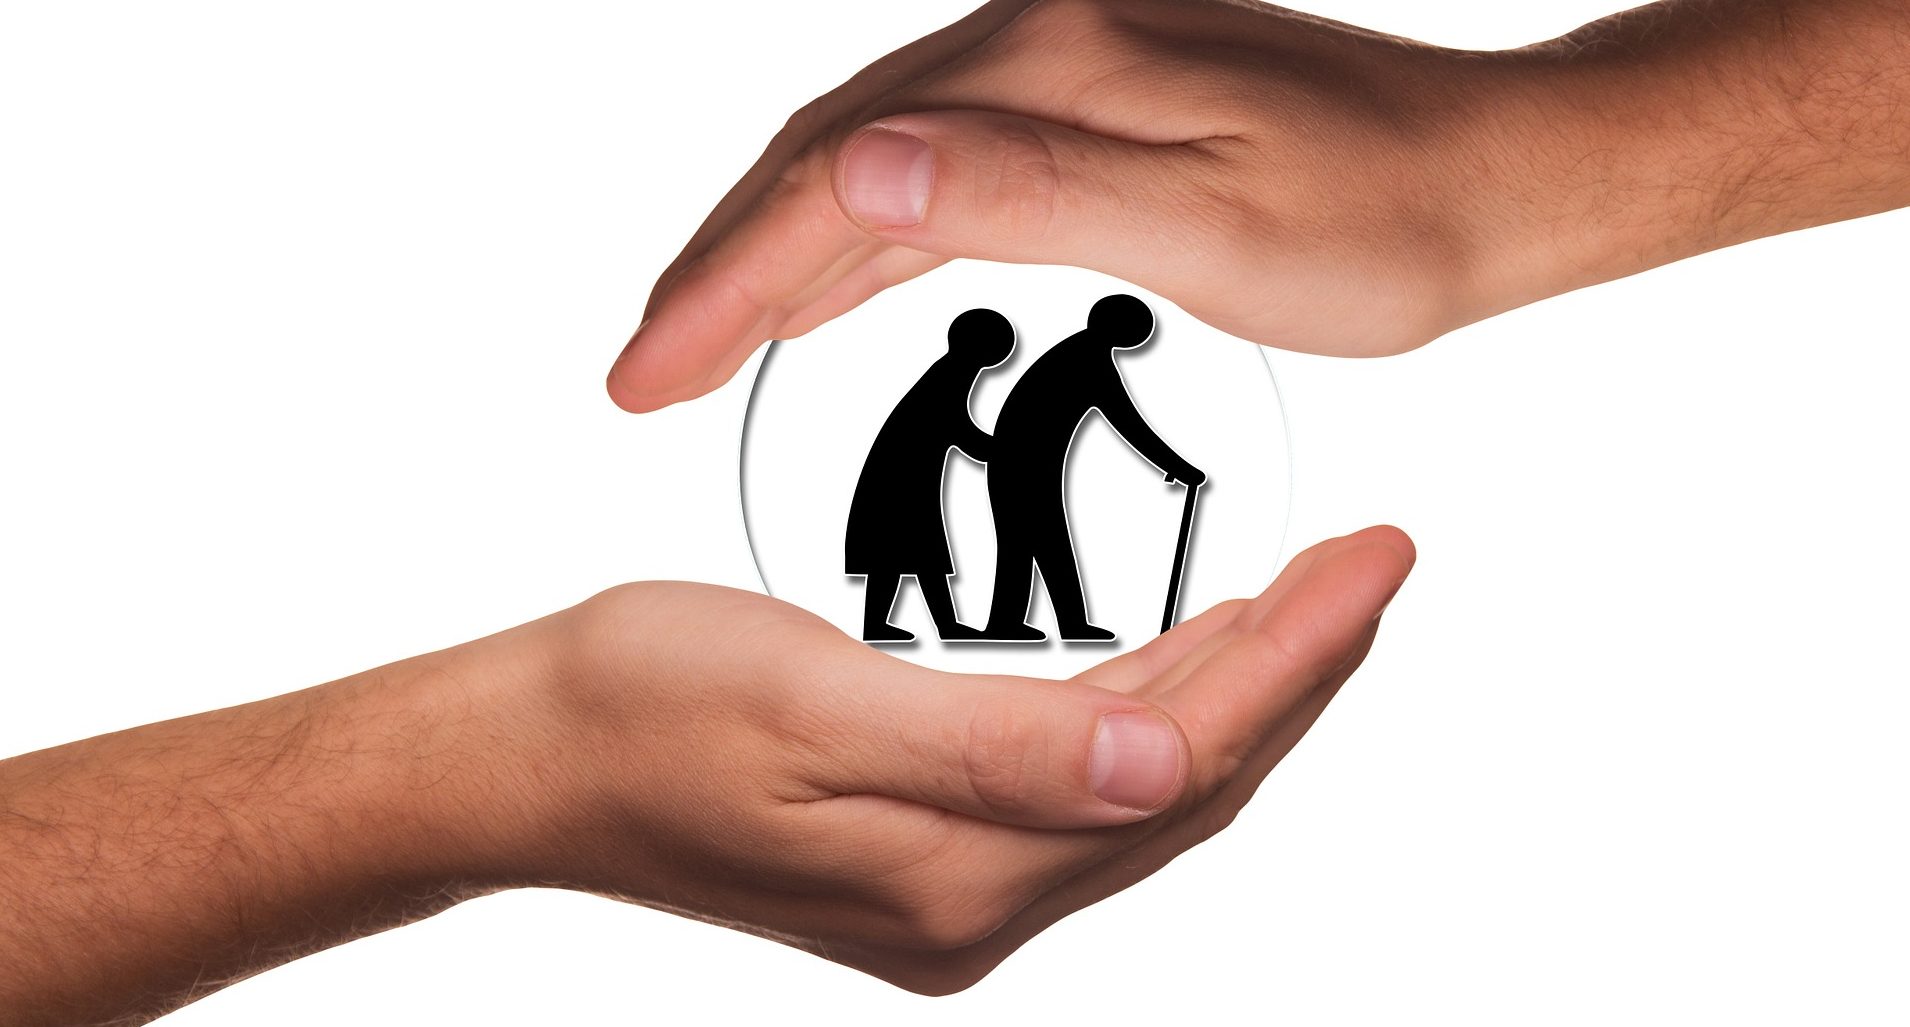 Maintien à domicile personne âgée : comment gérer ?